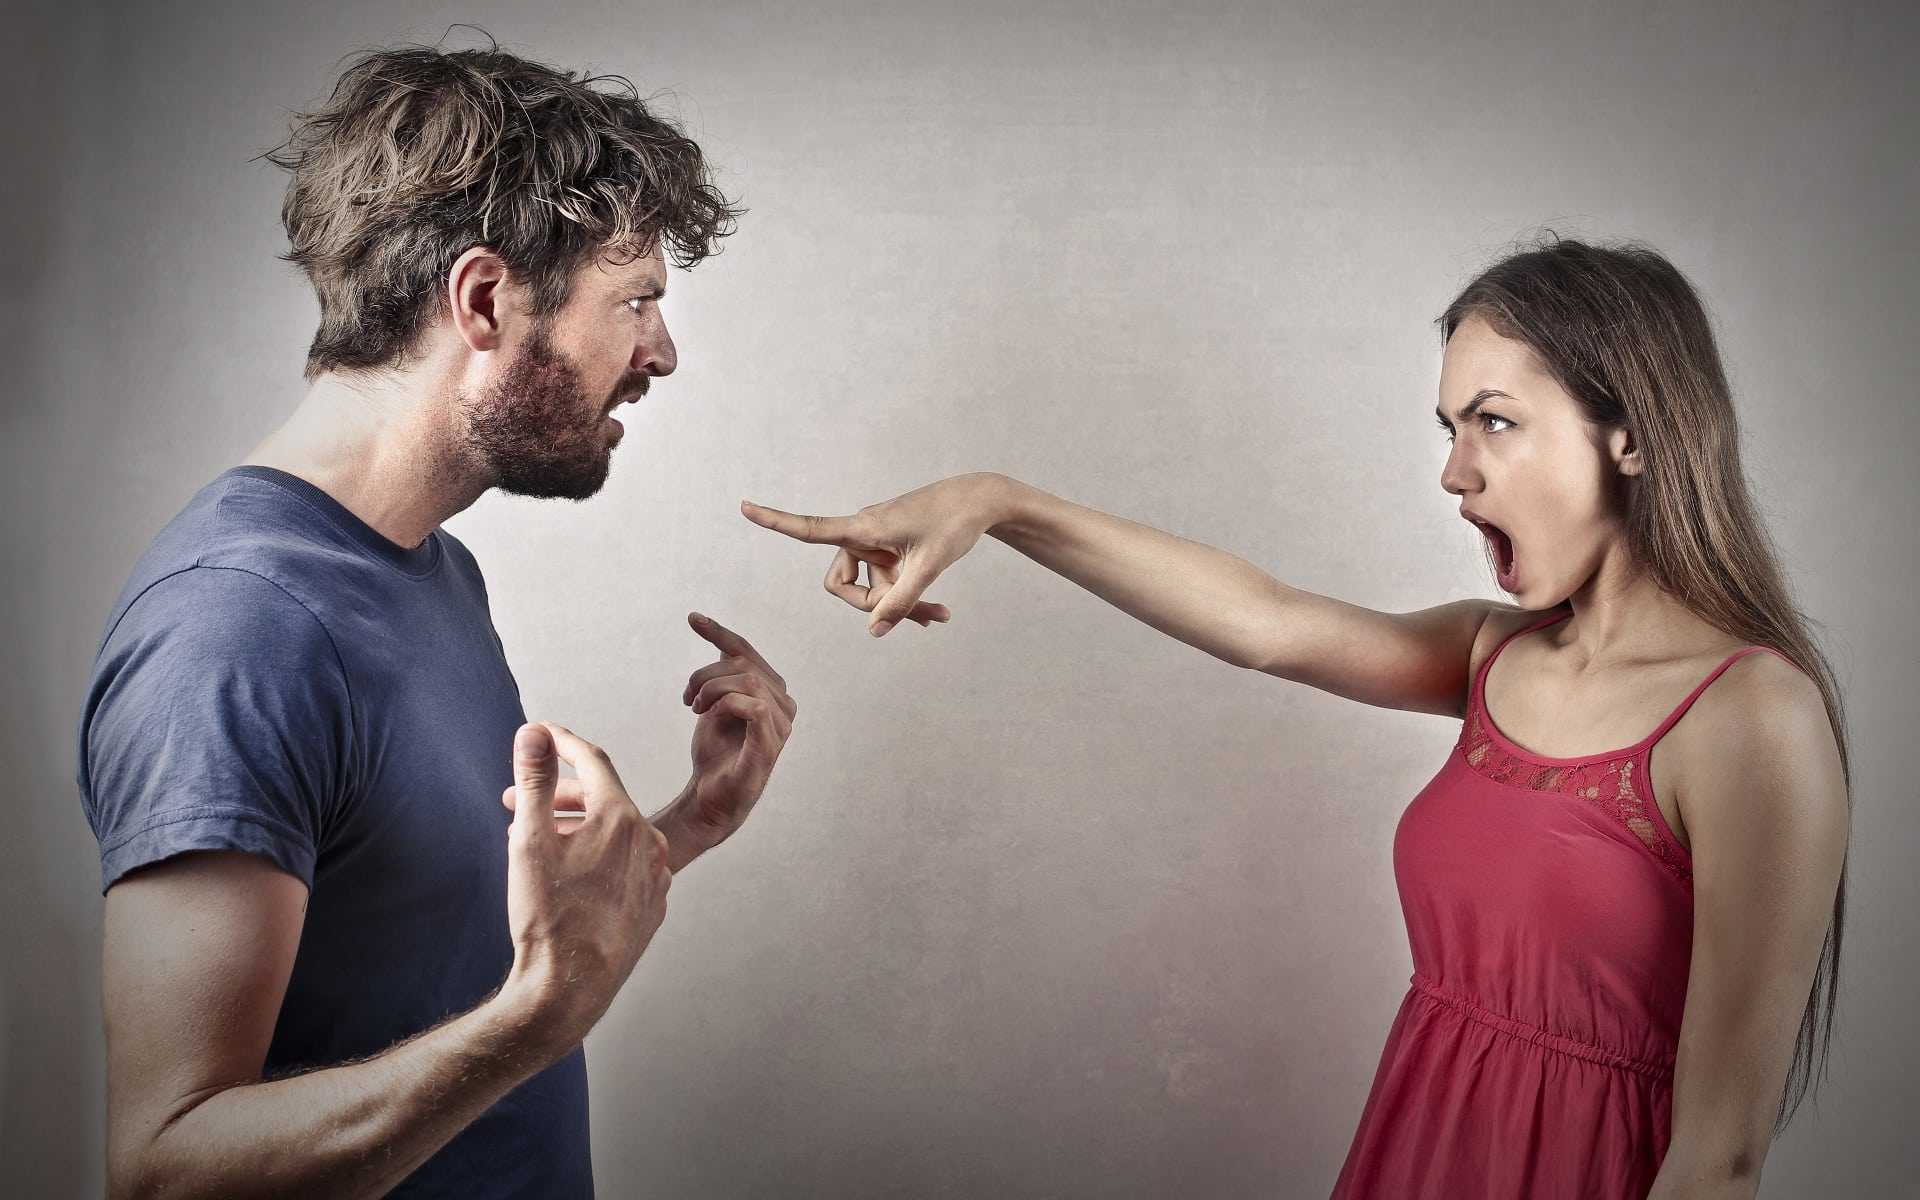 Страх измены: как побороть недоверие в отношениях?